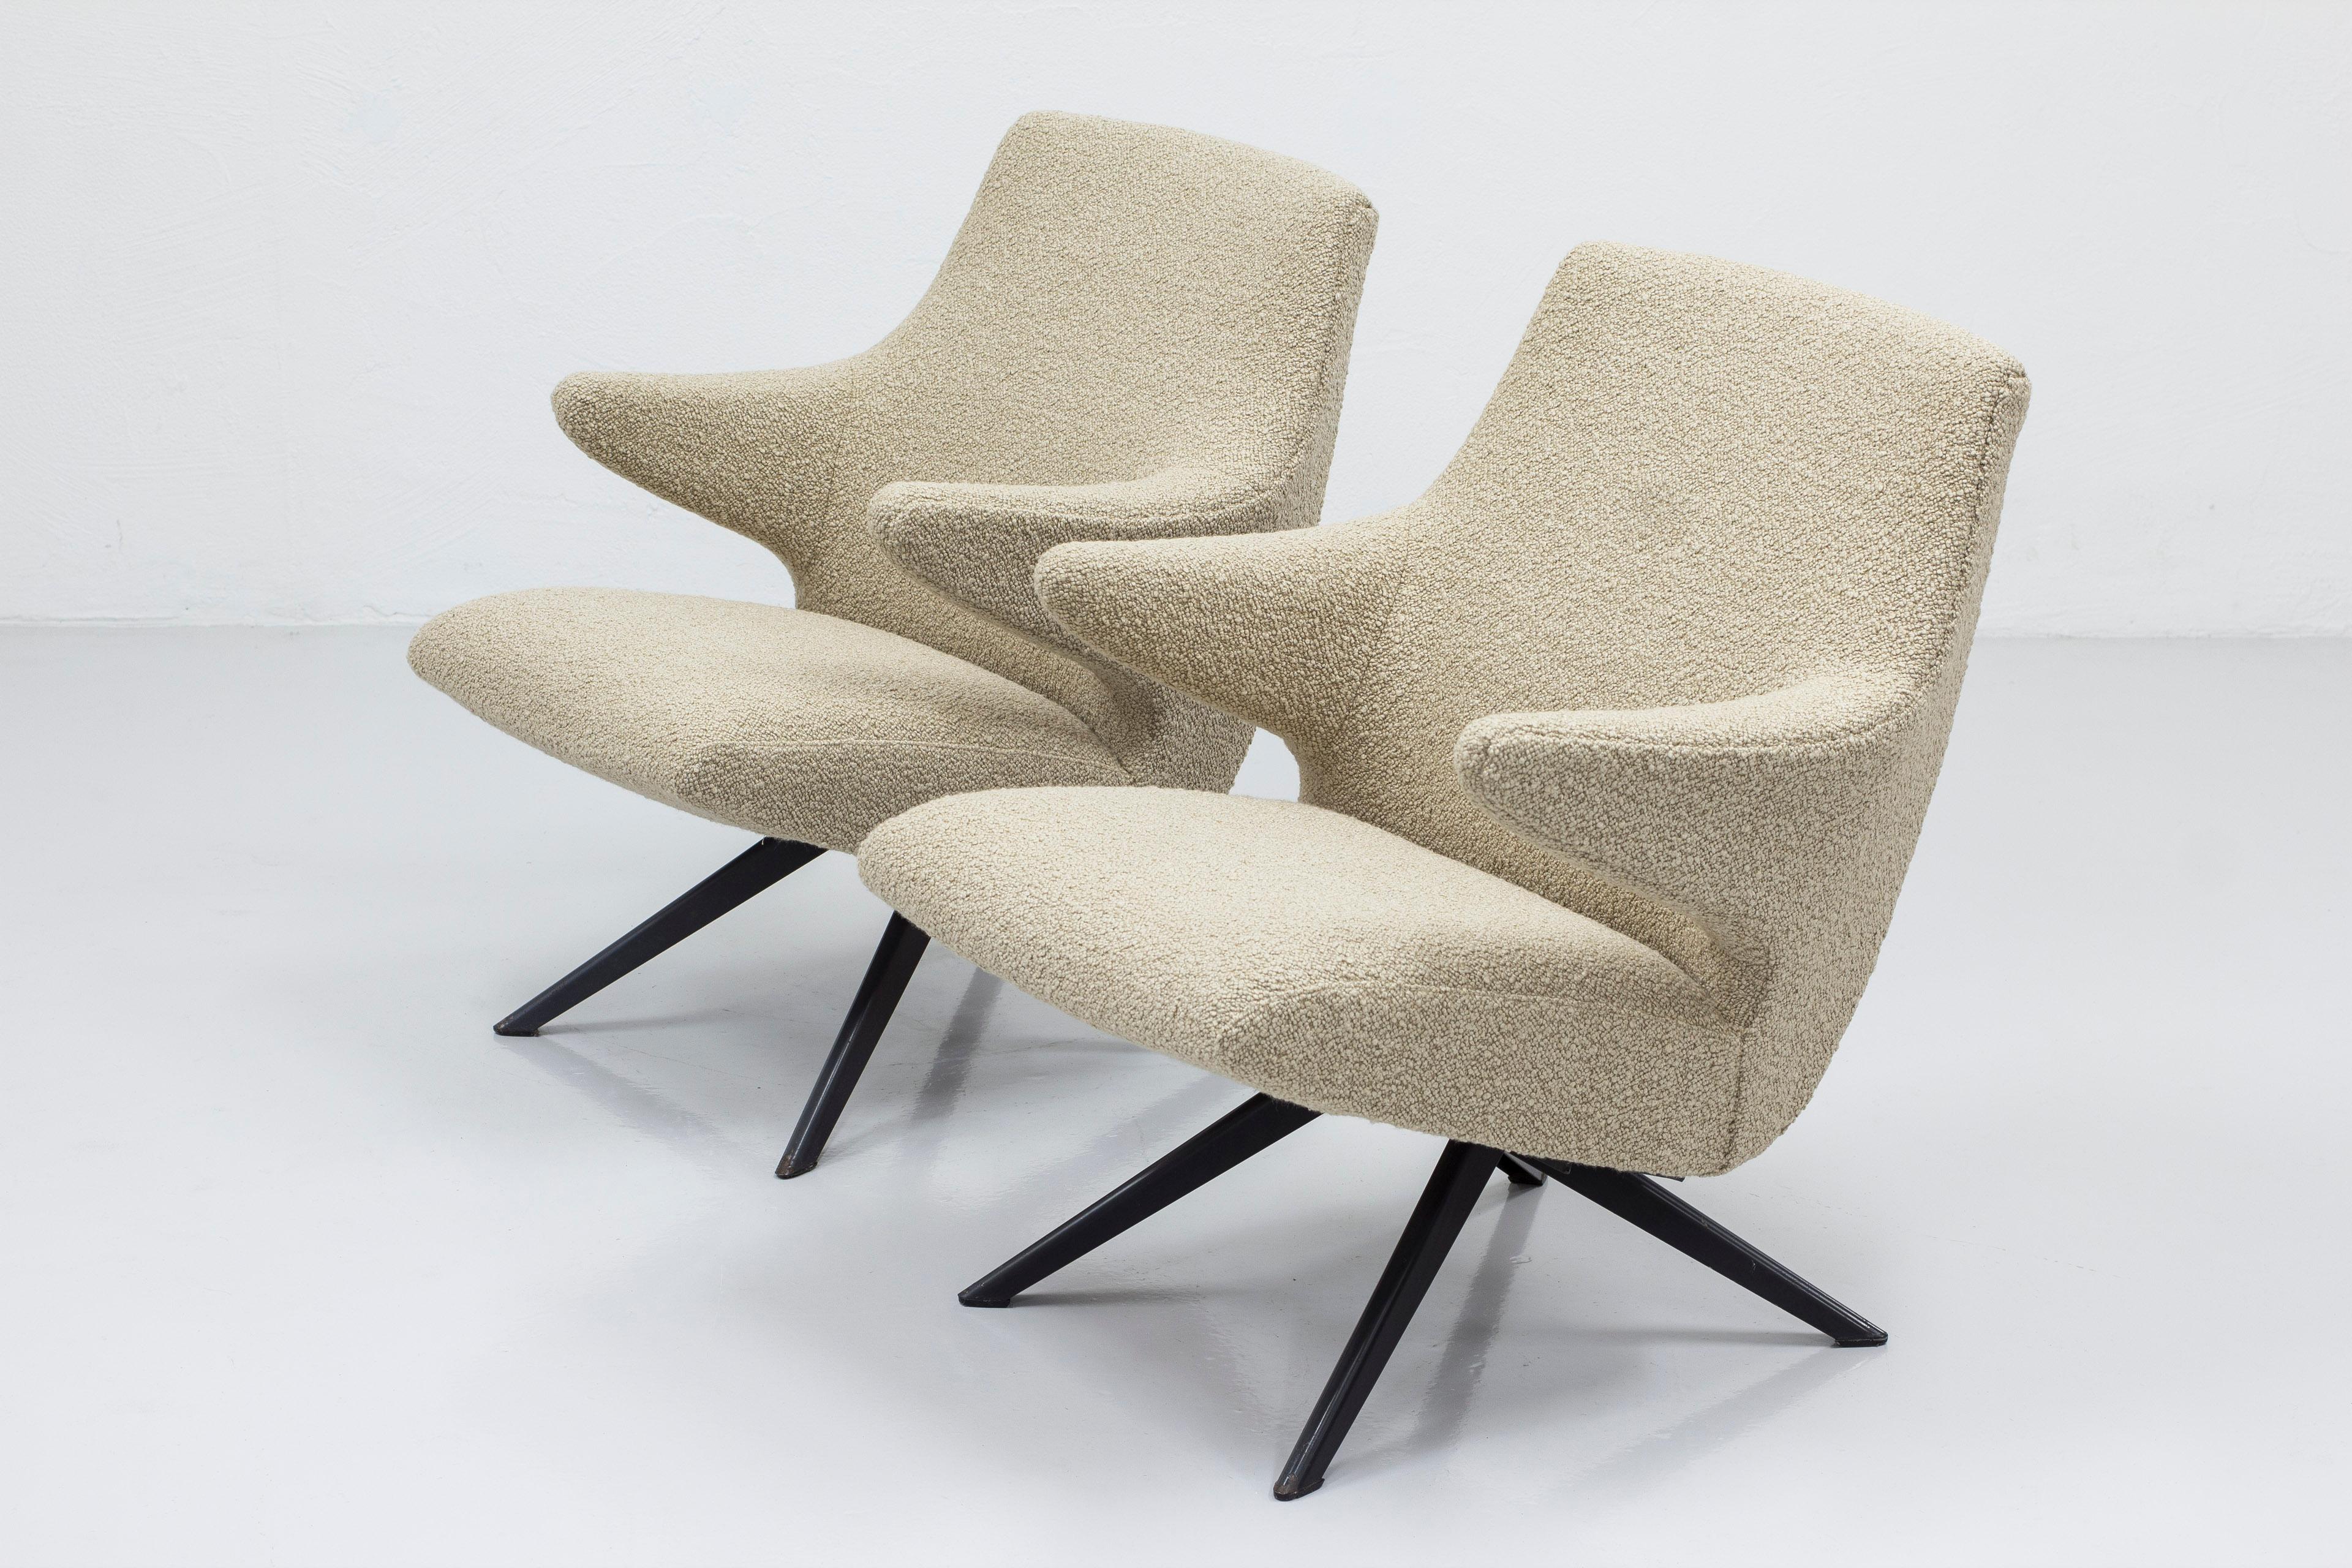 Sehr seltenes Paar Loungesessel, entworfen von Bengt Ruda, hergestellt von Nordiska Kompaniet in den frühen 1950er Jahren. Dunkelgrau lackiertes Stahlgestell mit vier Füßen und Sitzen aus organischen Federn und Schaumstoff. Neu gepolstert mit